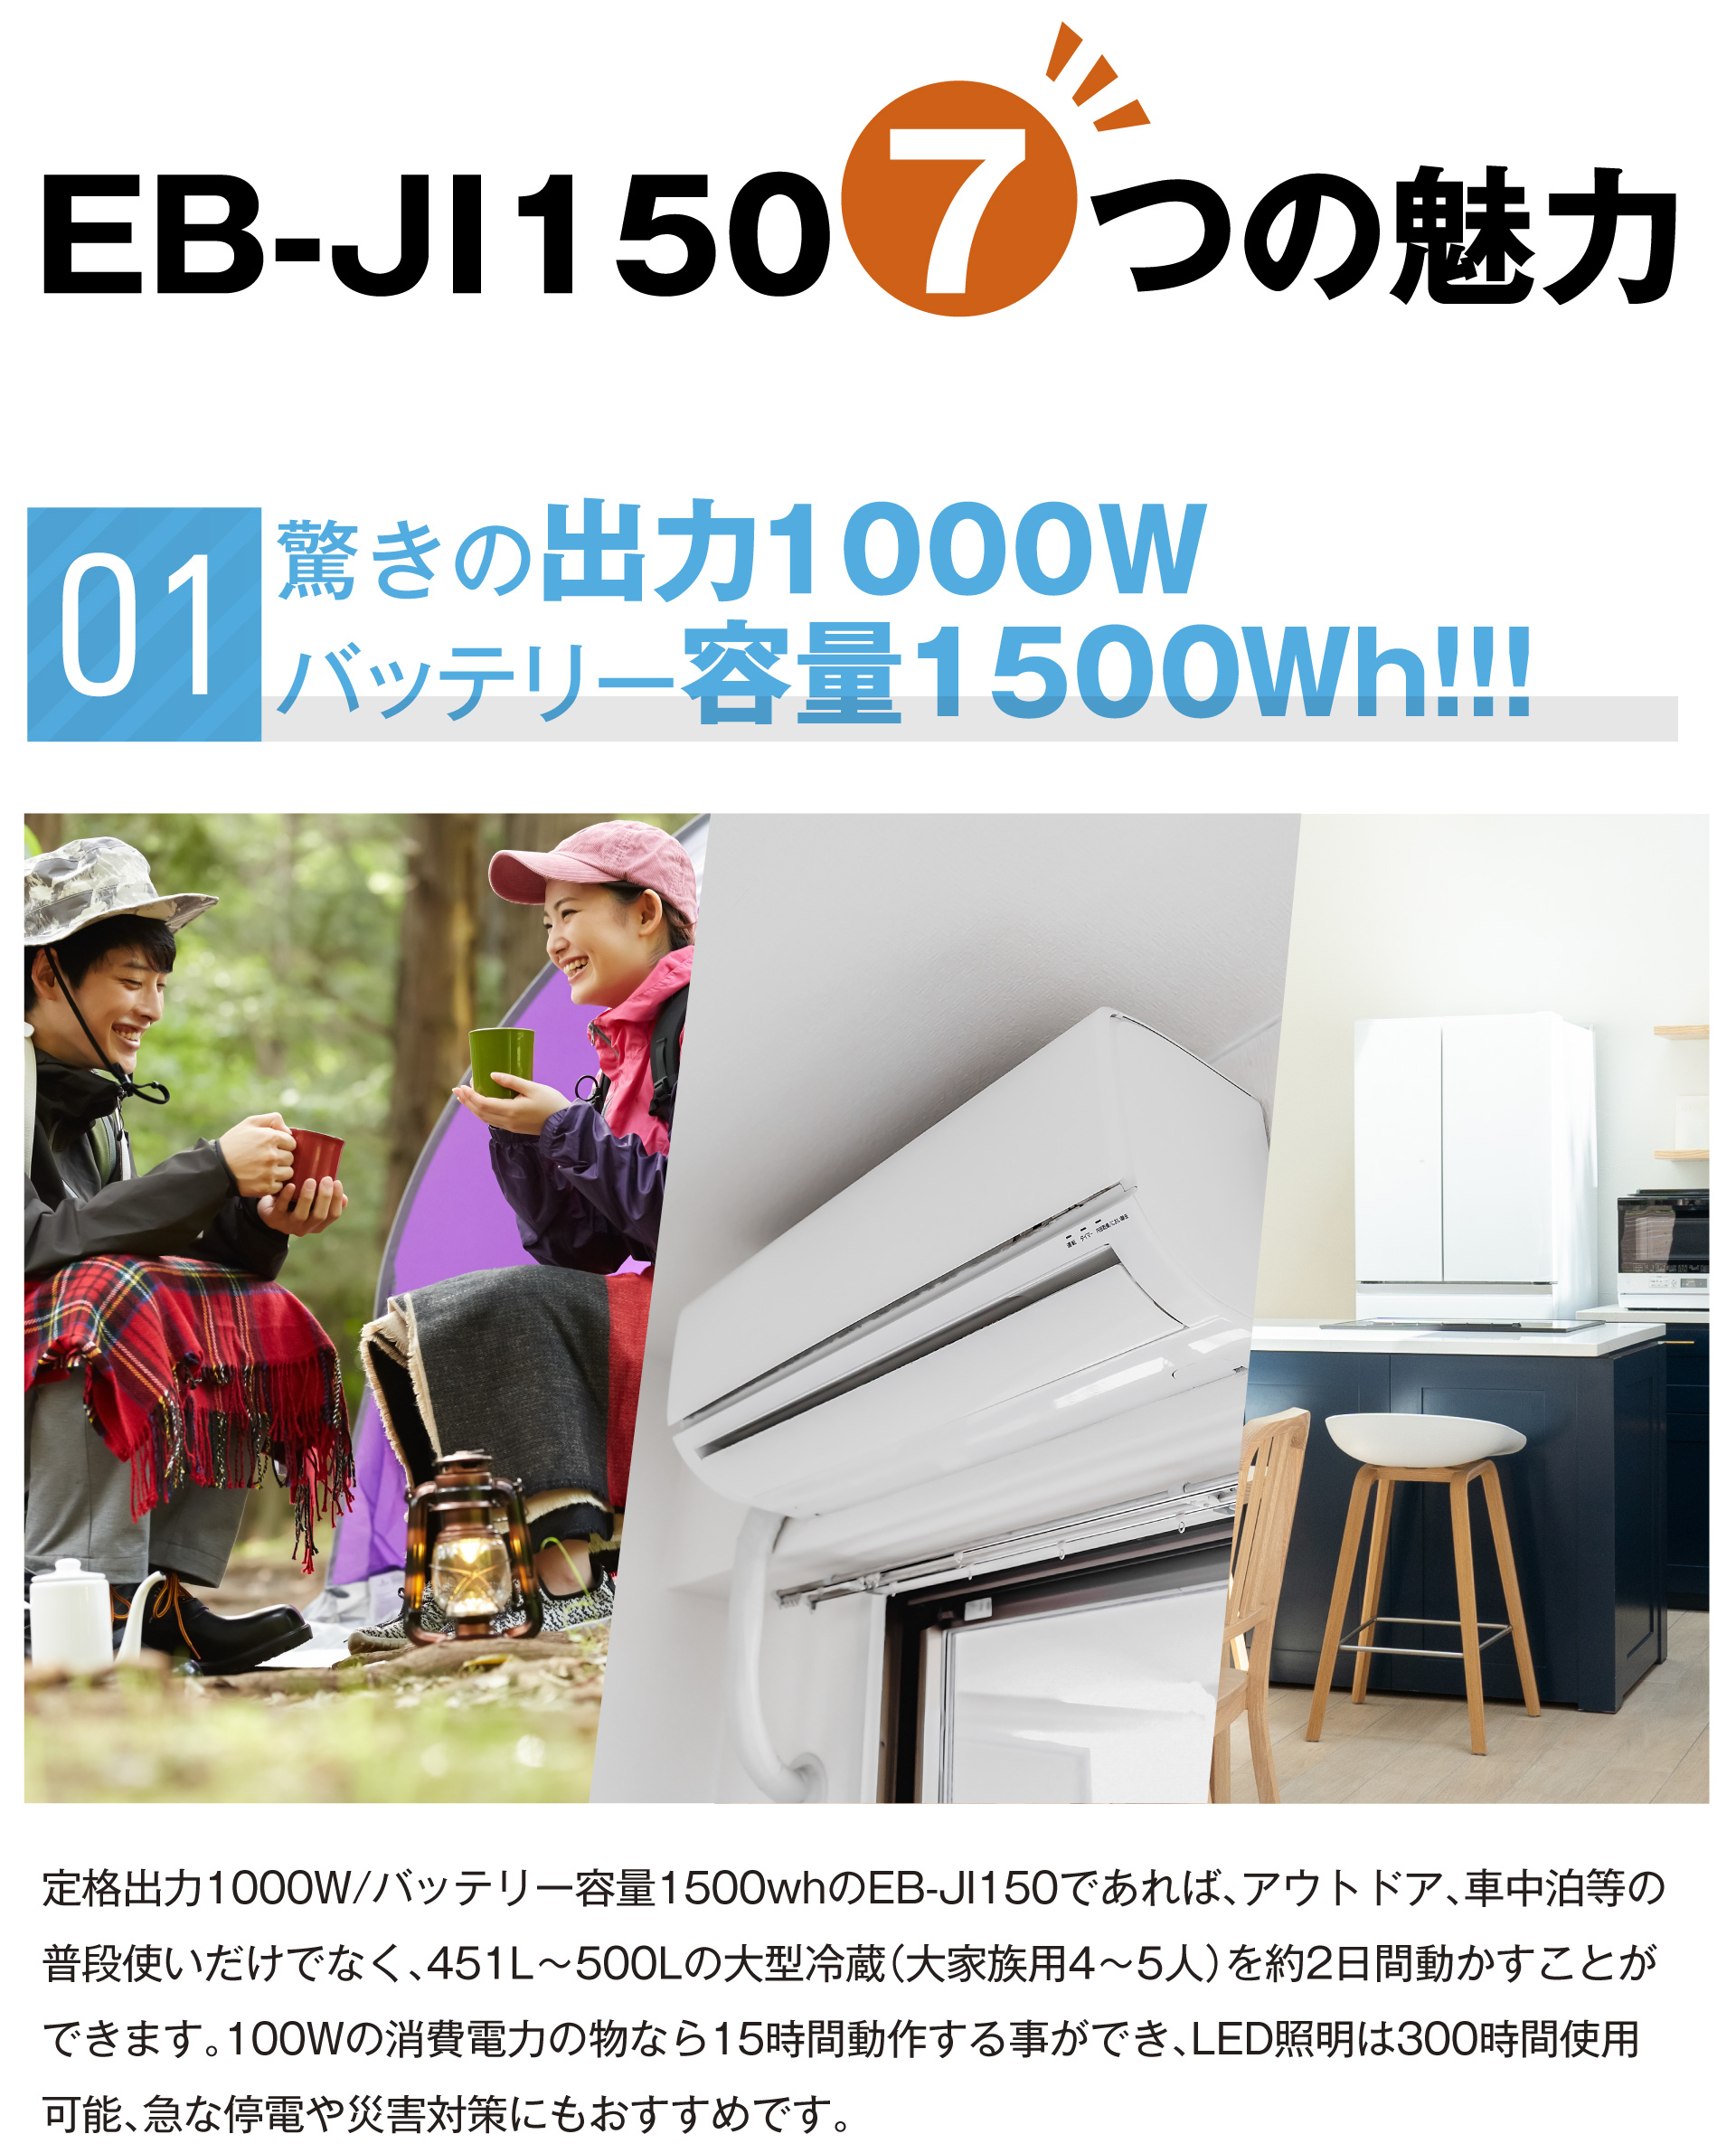 EB-JI150 商品詳細